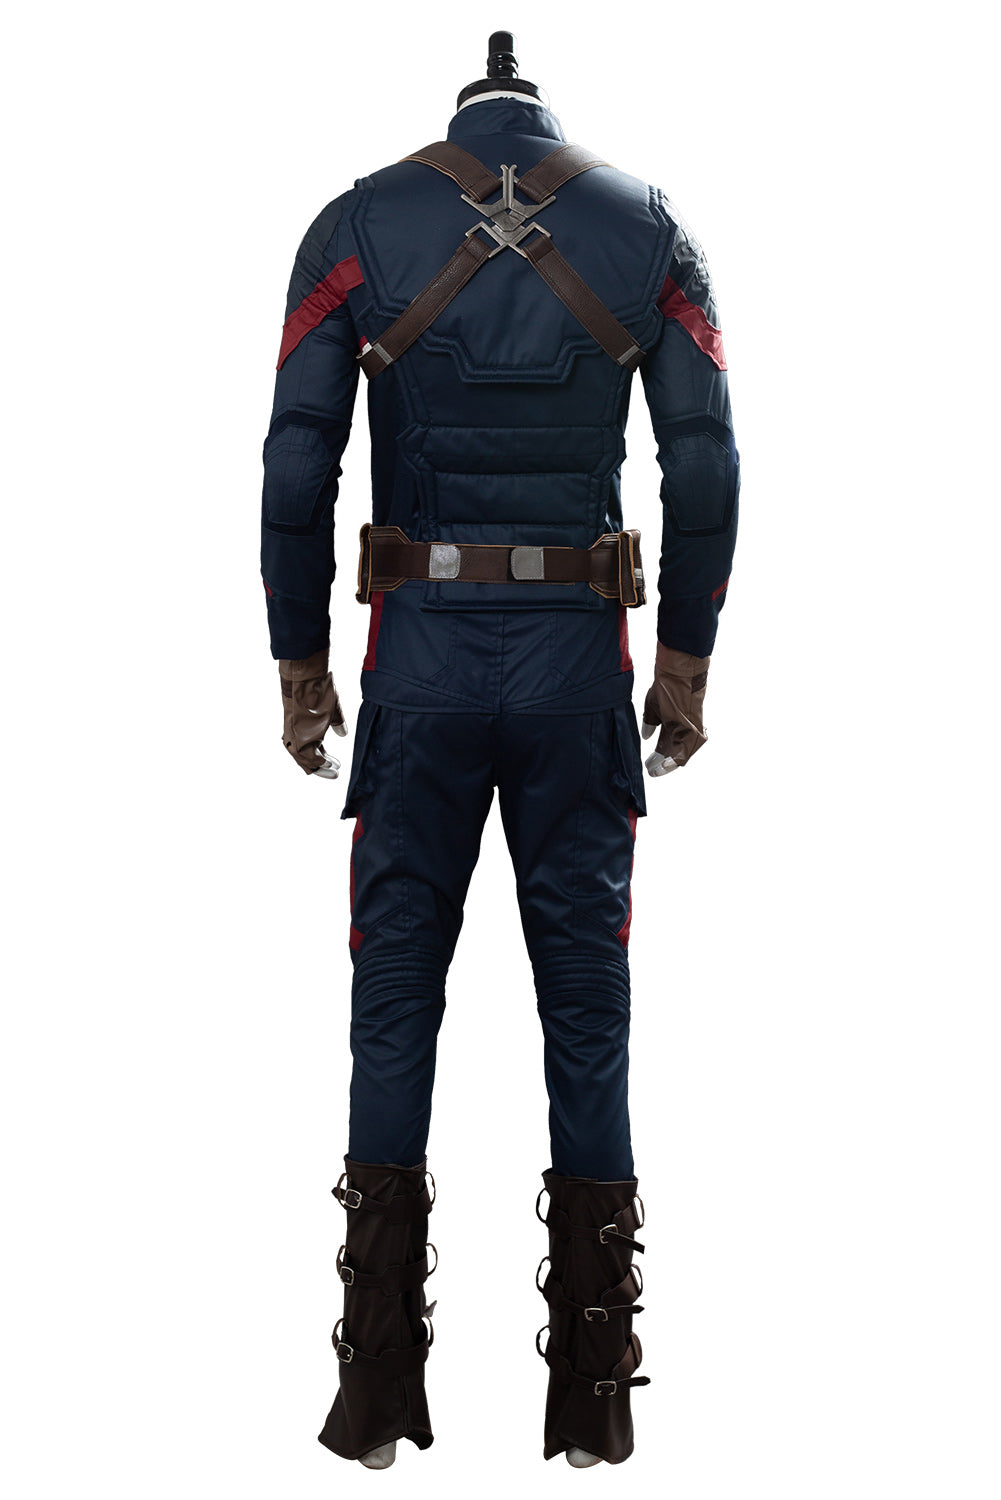 Avengers 4 Avengers: Endgame Avengers Part 2 Captain America Cosplay Kostüm NEU Set